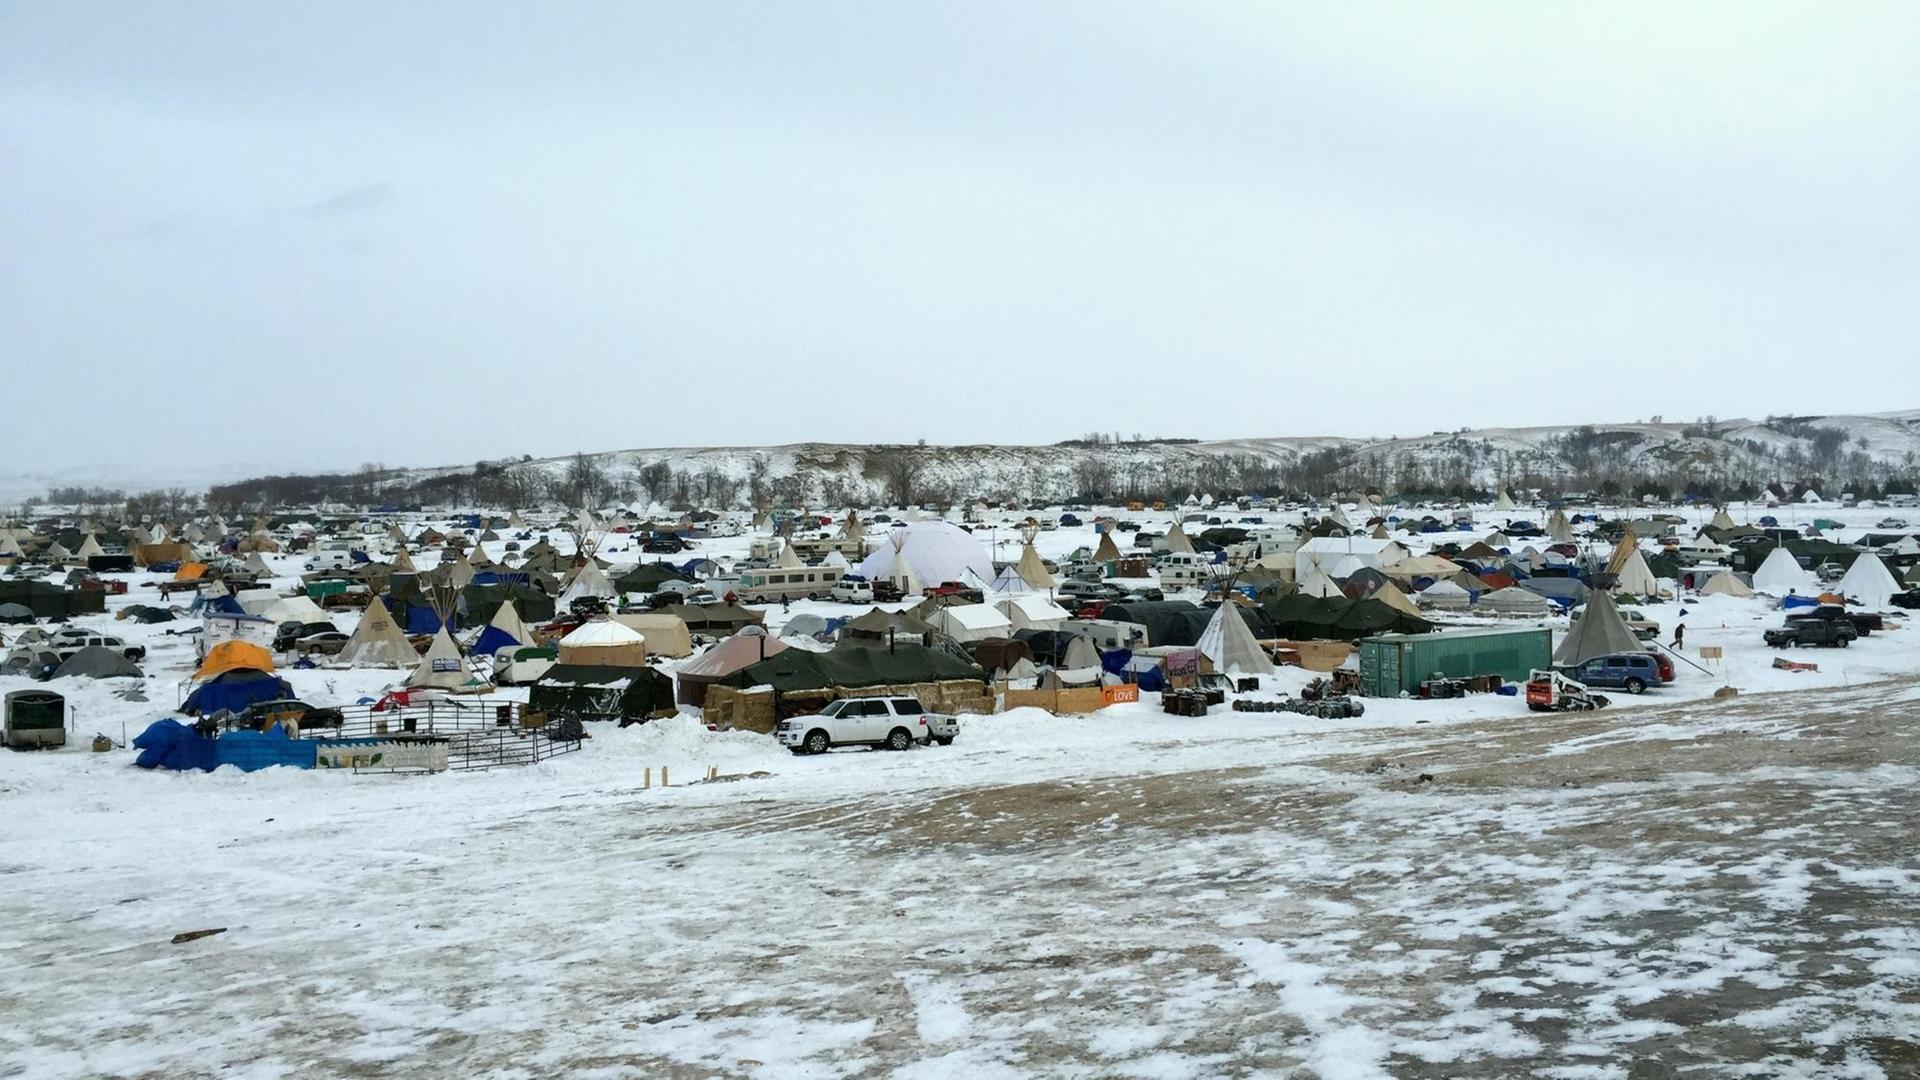 Von einem Hügel sieht man hunderte Zelte im Schnee von Demonstranten gegen die Öl-Pipeline.